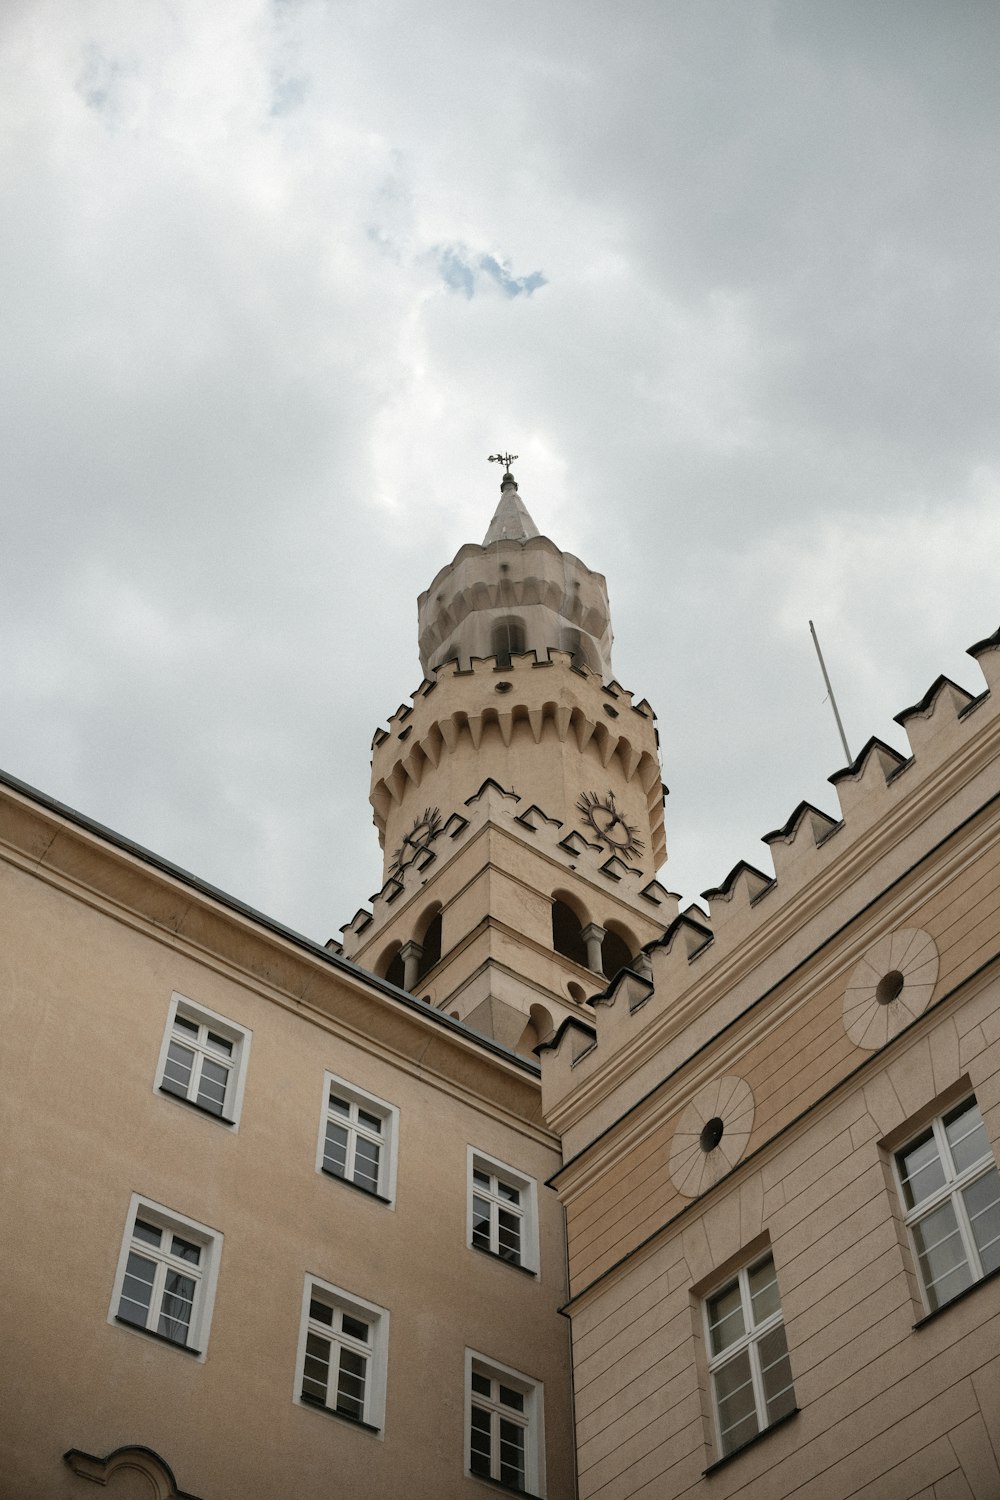 Ein hohes Gebäude mit einer Uhr auf der Spitze